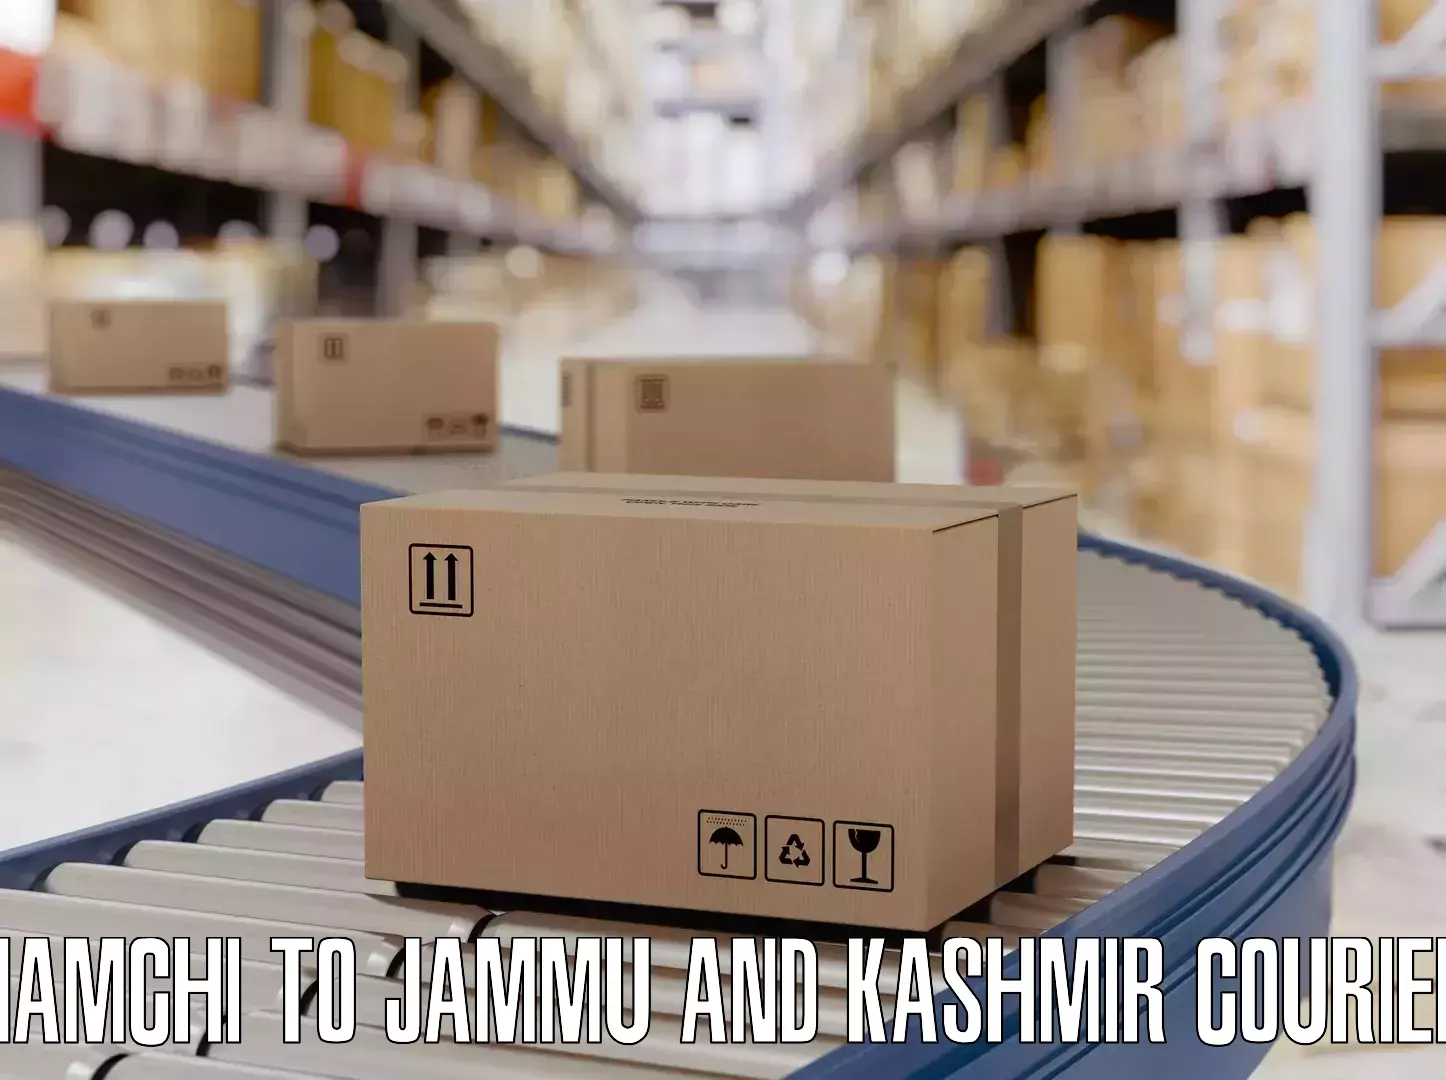 Safe luggage delivery Namchi to Jammu